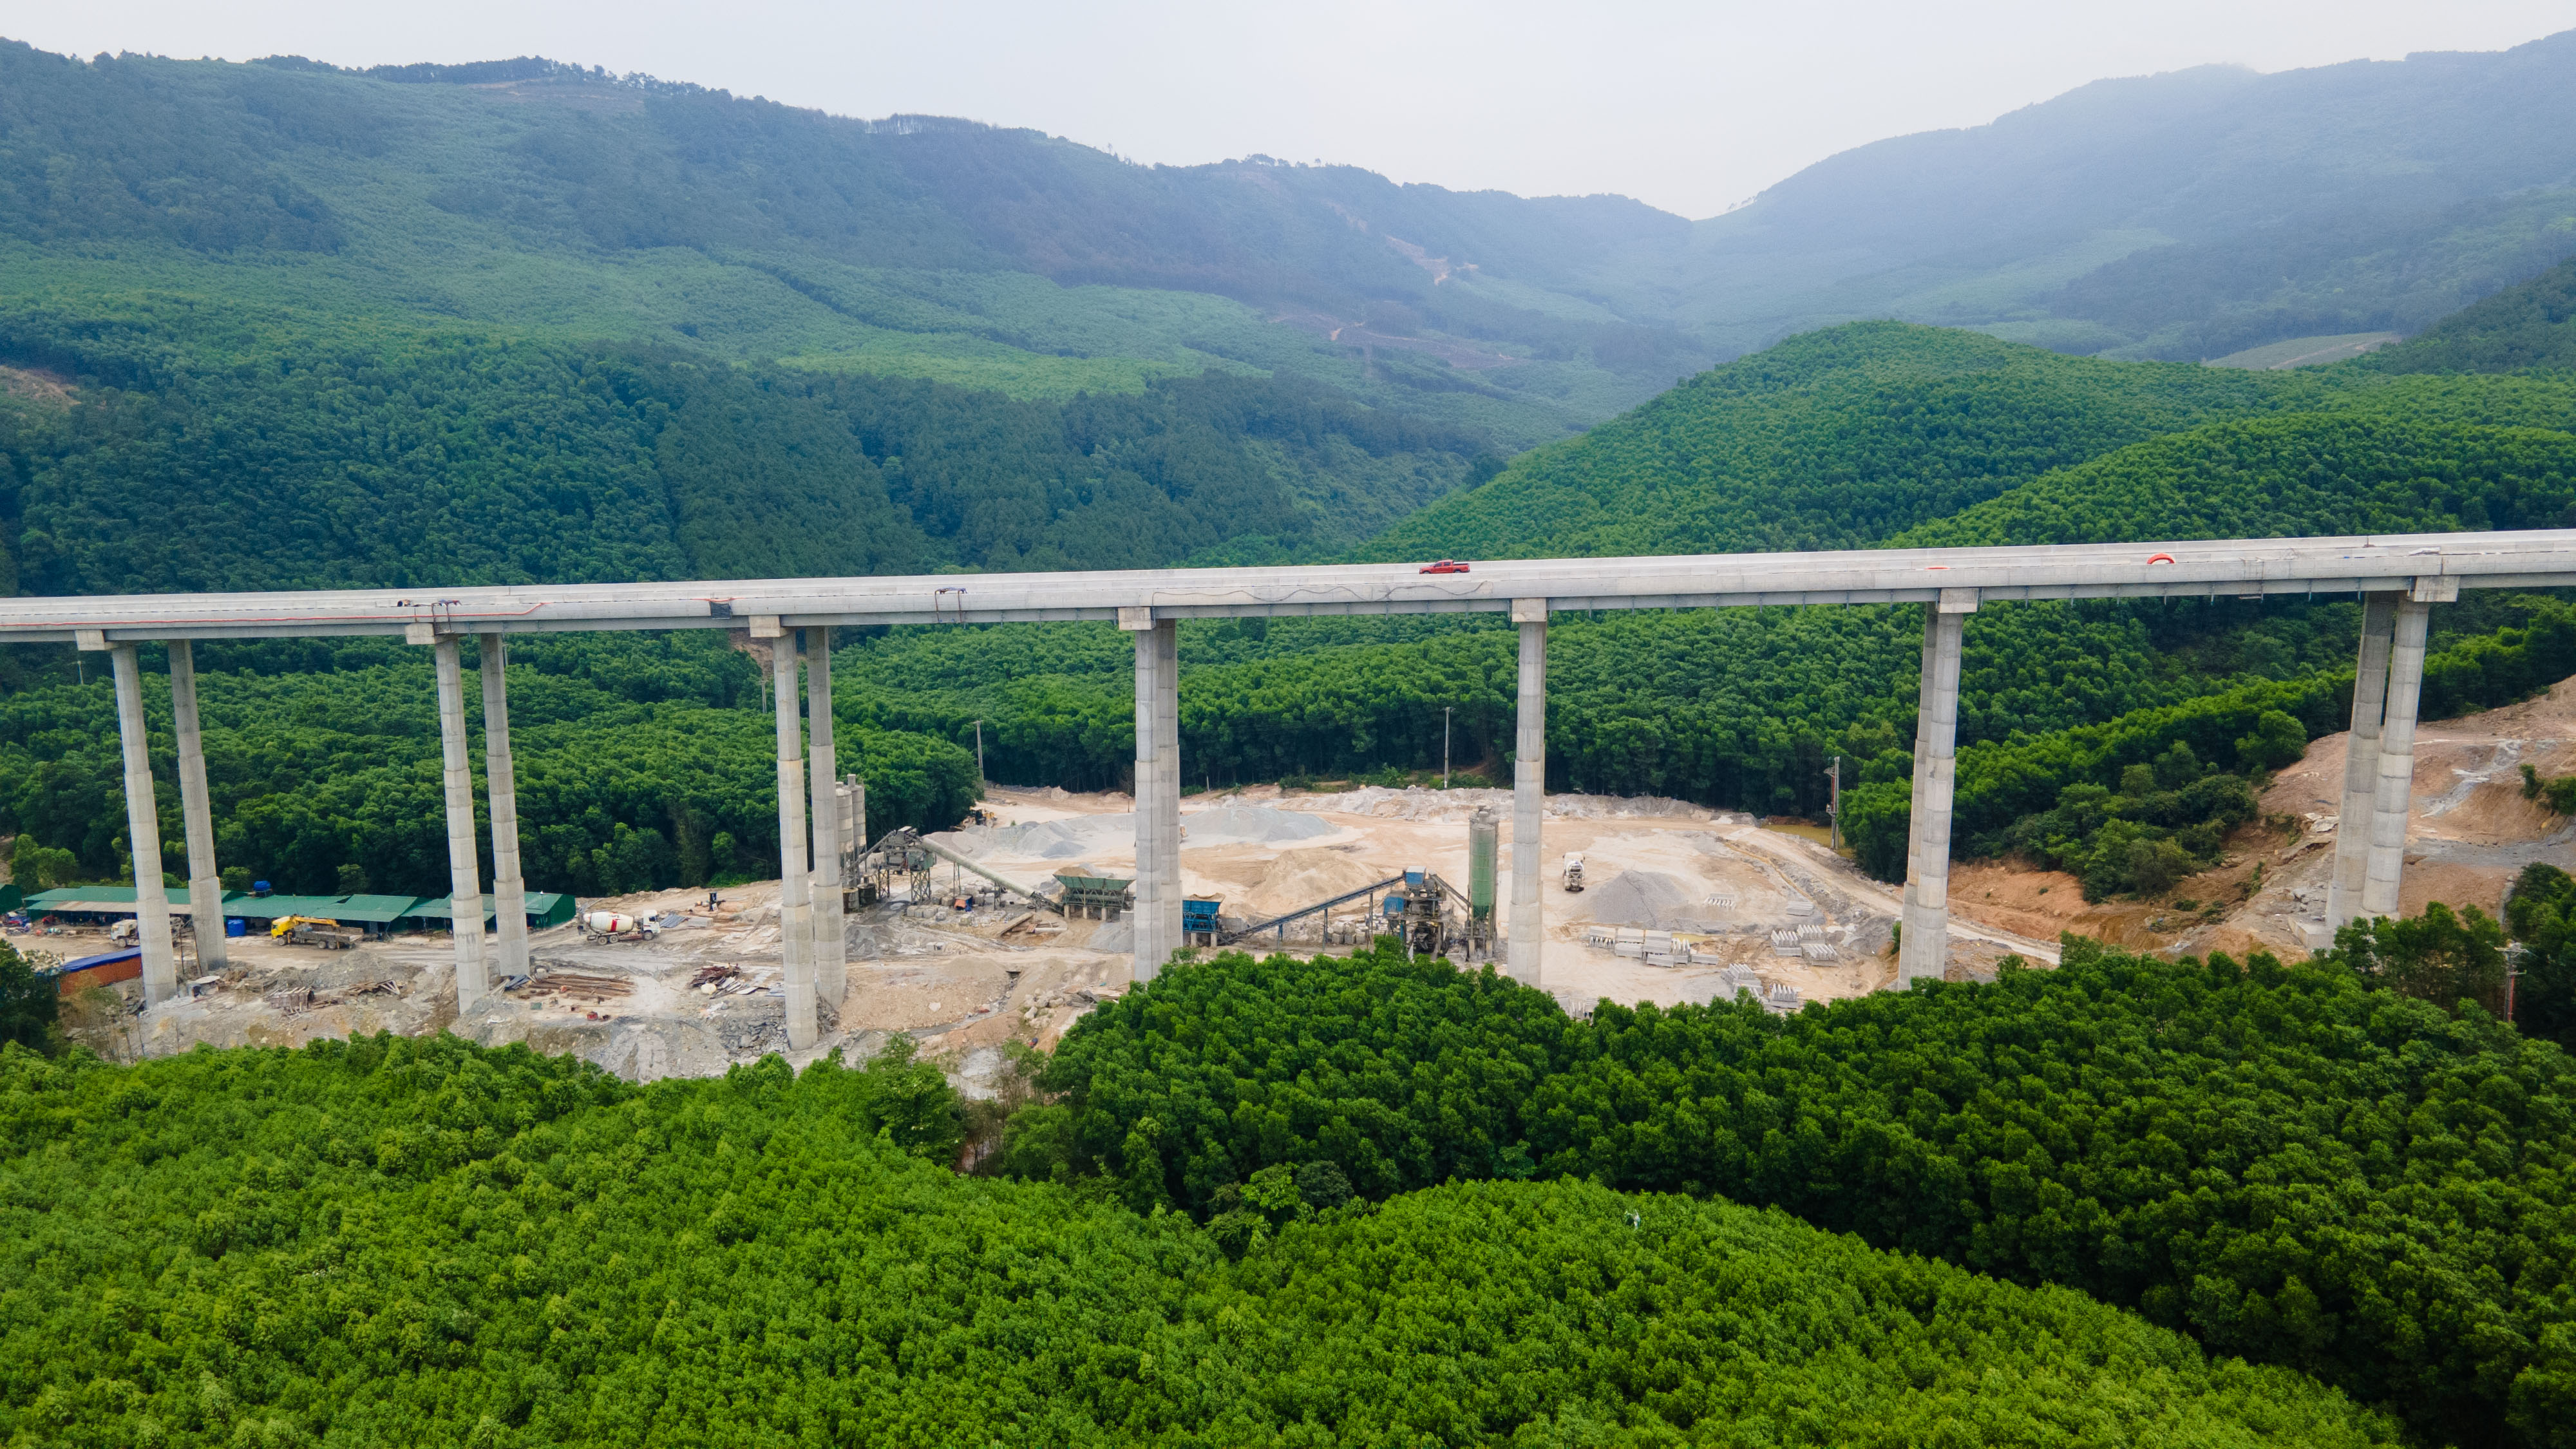 Choáng ngợp với cầu cạn cao hàng chục mét chạy qua núi non, hồ đập ở Nghệ An - 5